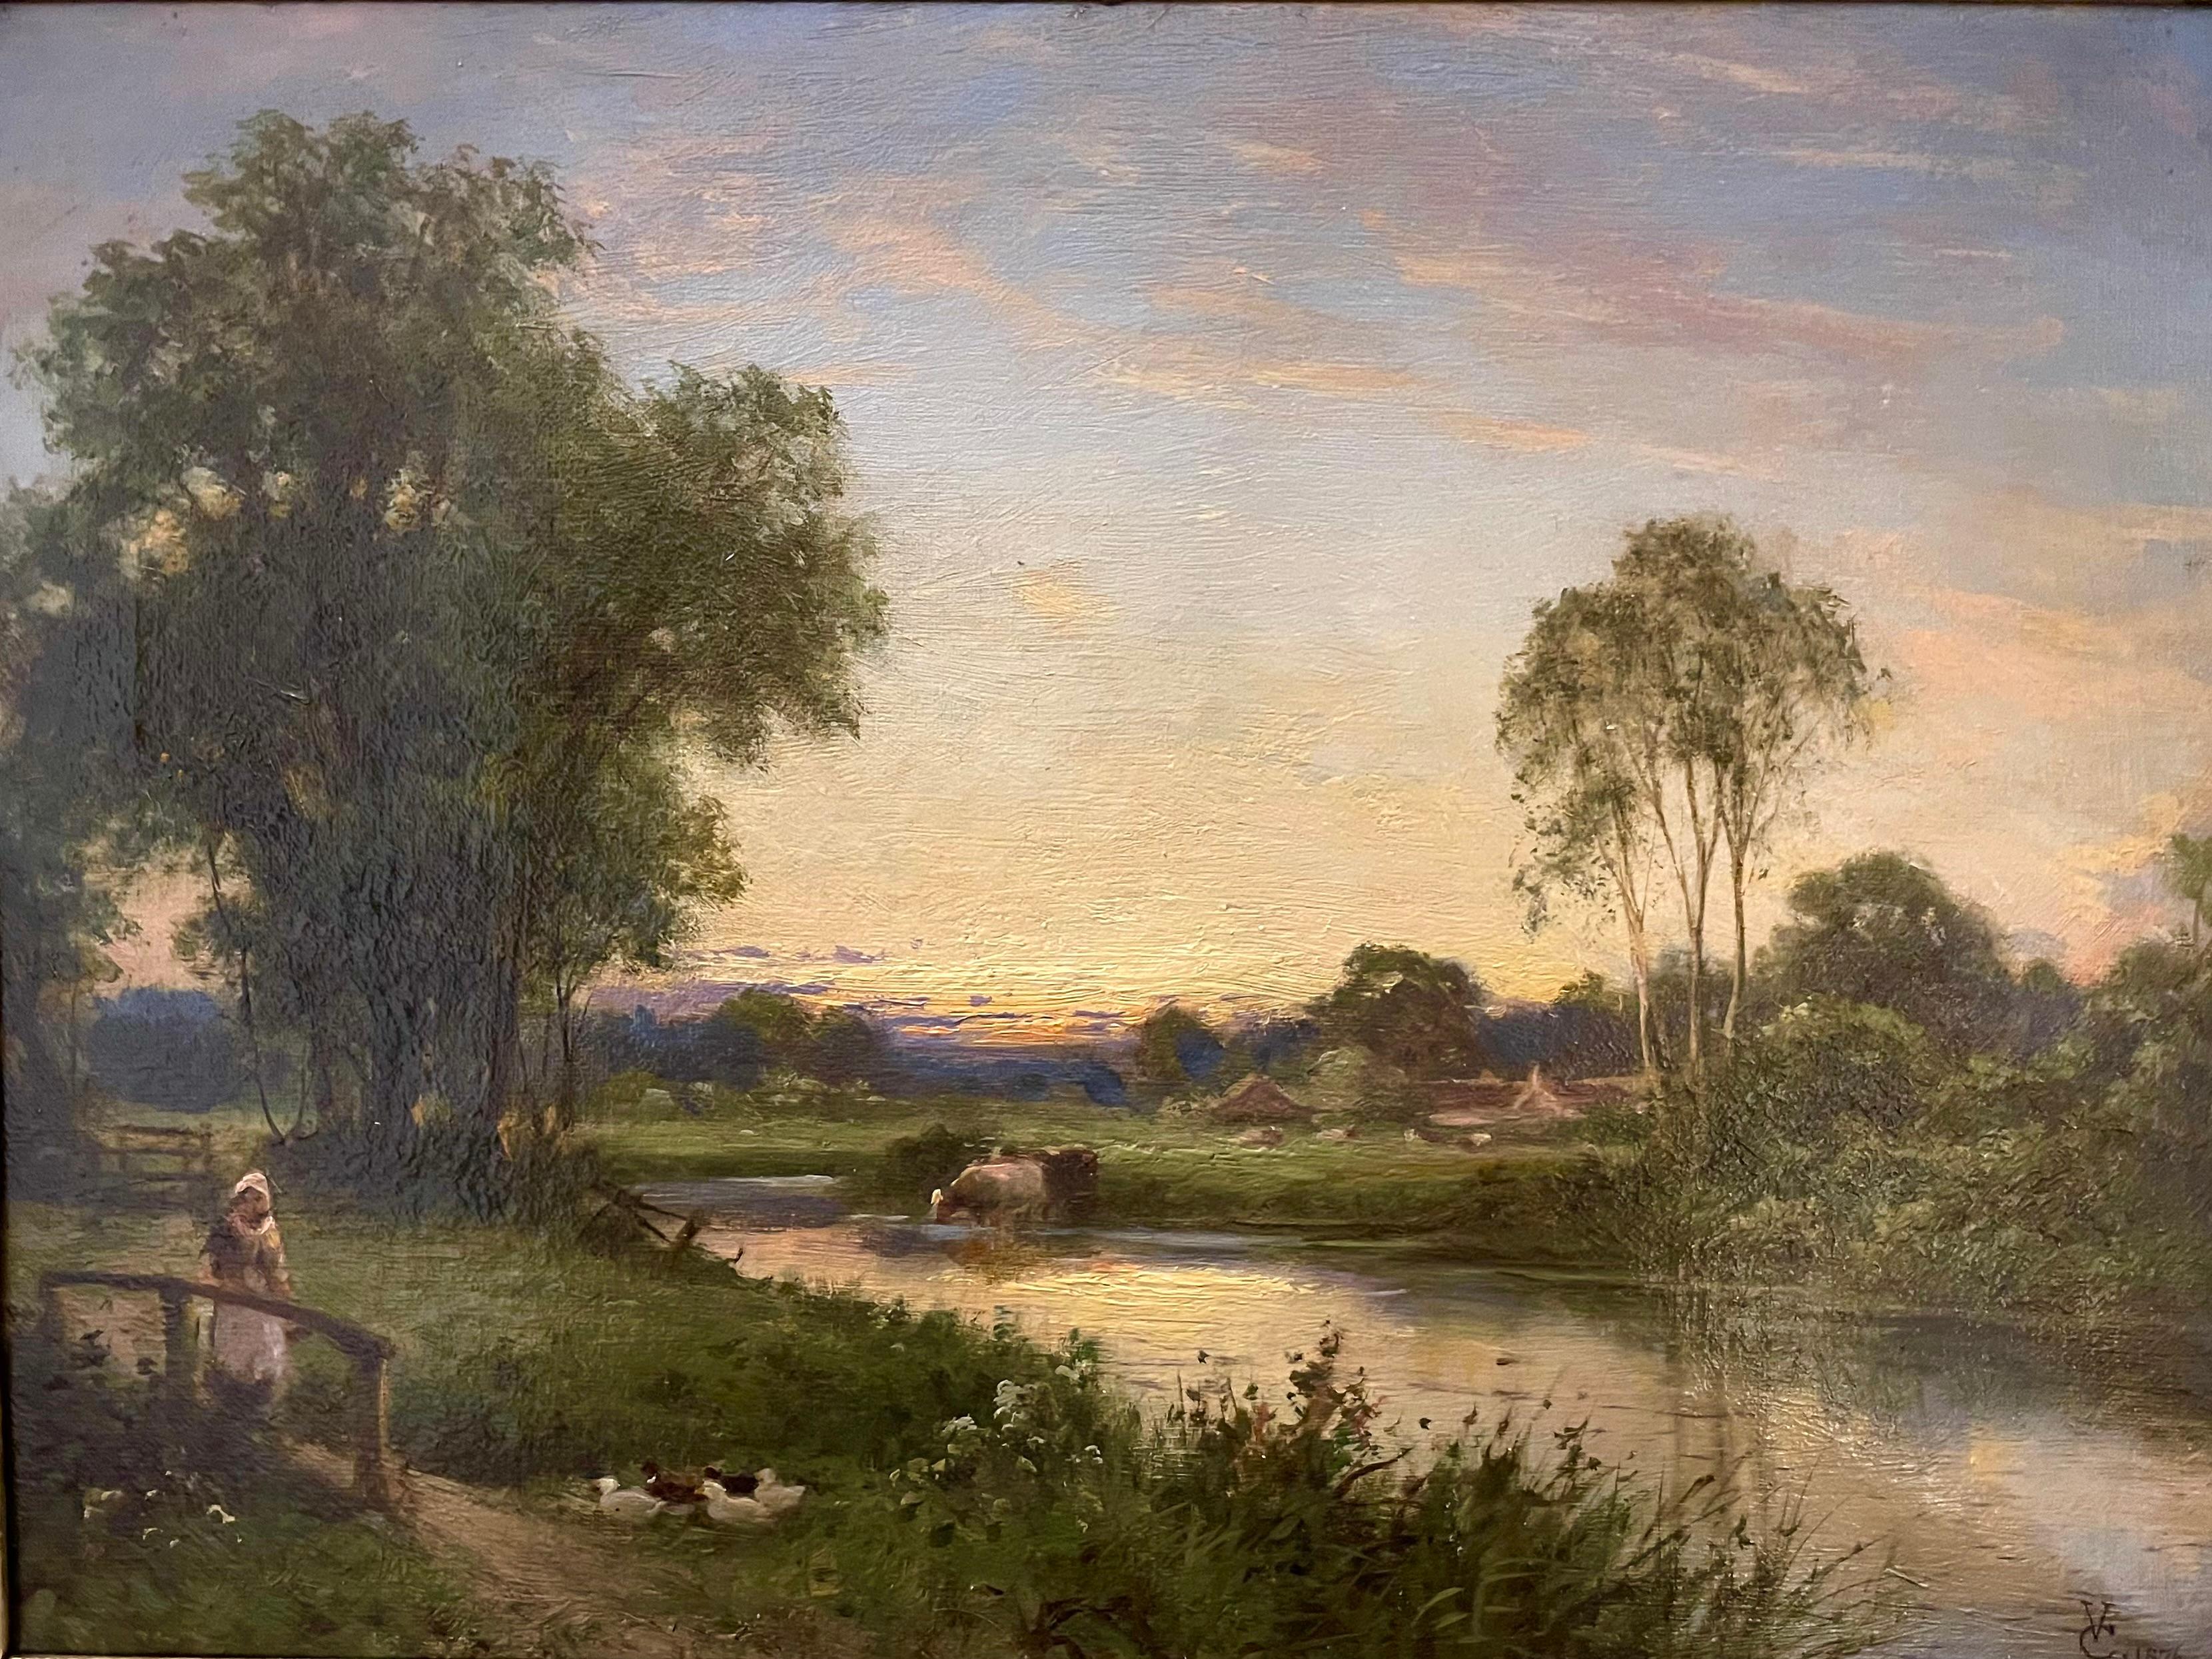 Shere, Surrey, huile sur toile, paysage, 19e siècle - École anglaise Painting par George Vicat Cole RA